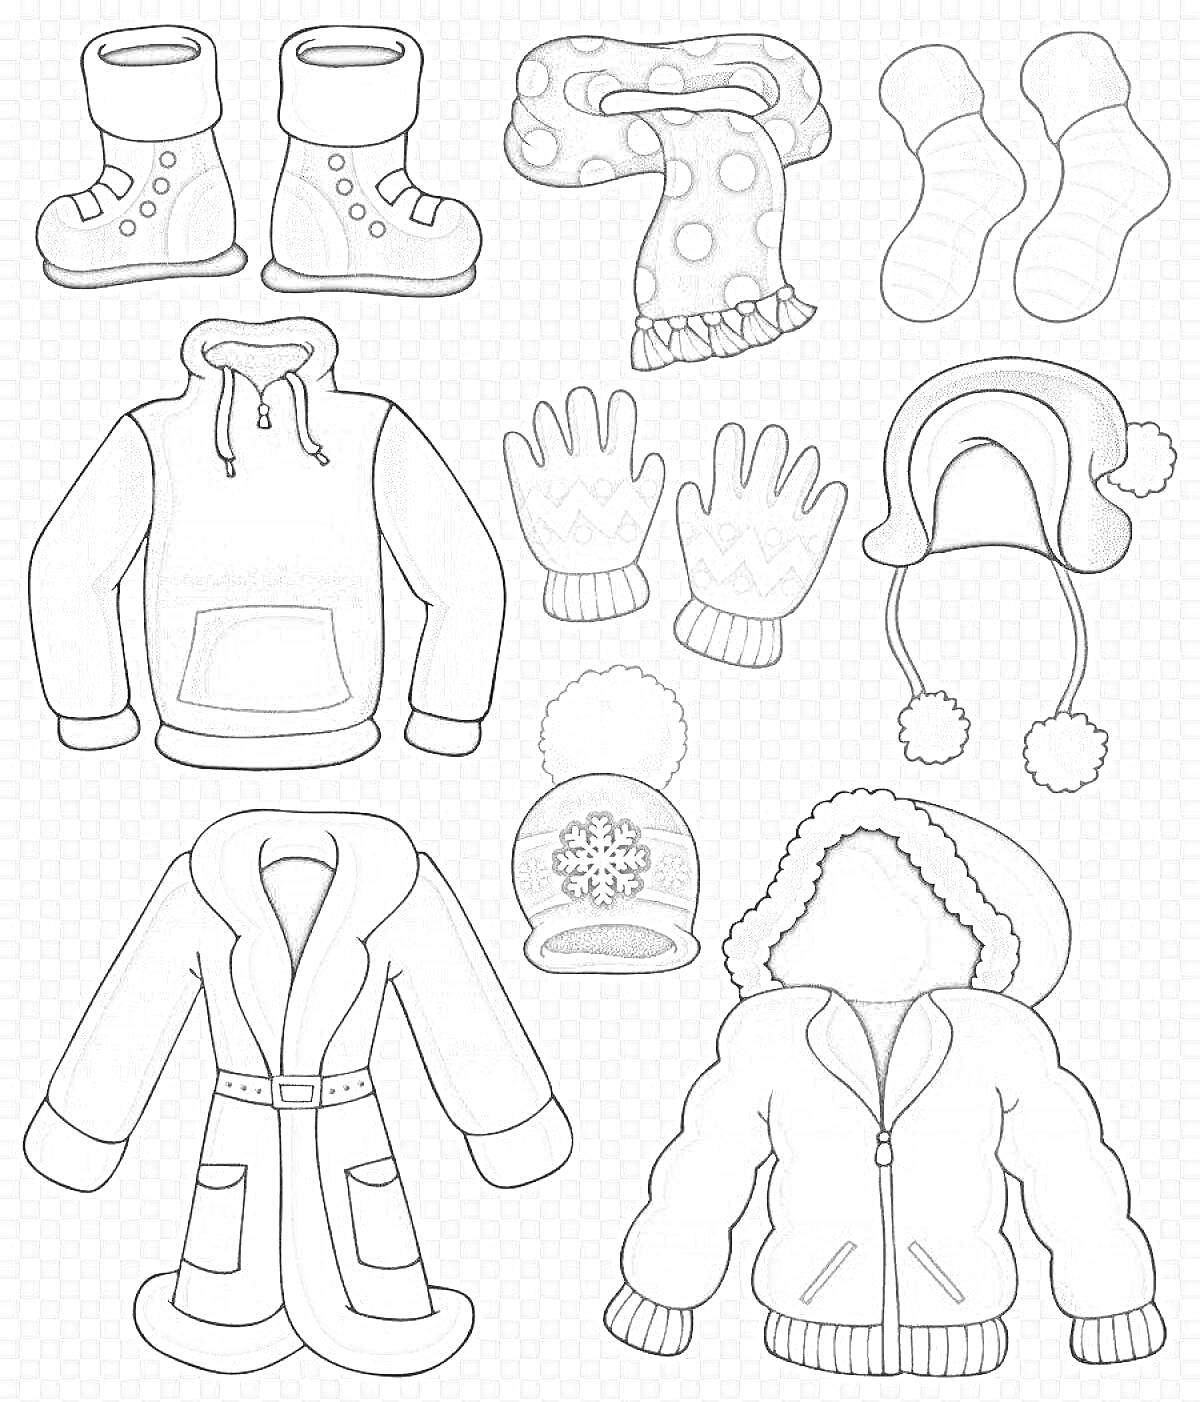 сапоги, шарф в горох, носки, жилетка с капюшоном, перчатки, шапка с помпоном, шапка с ушками и помпонами, пальто, вязаная шапка с снежинкой, куртка с капюшоном